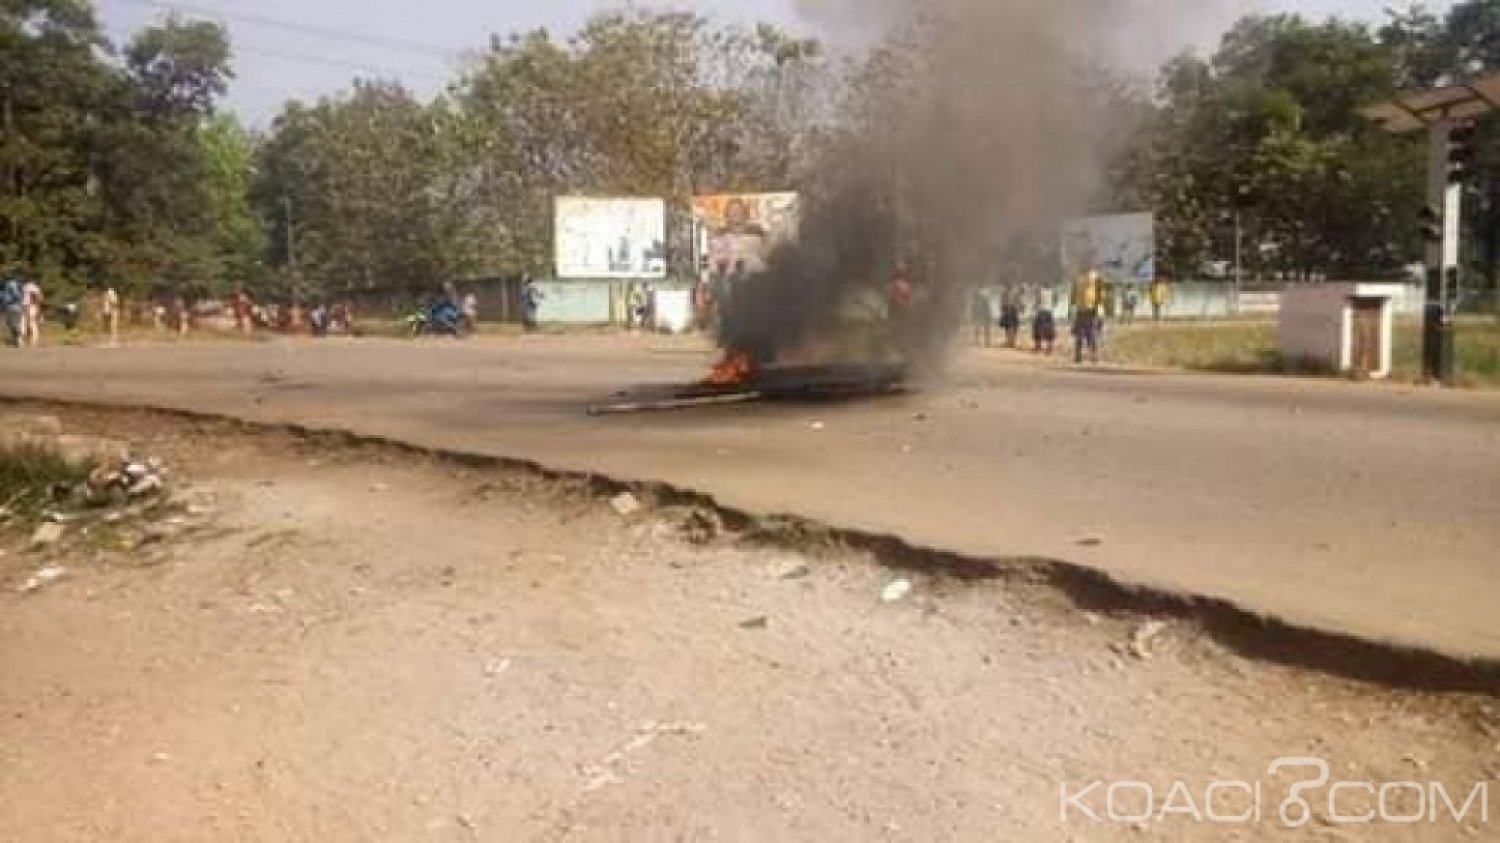 Côte d'Ivoire : Grève dans l'éducation, à  Guiglo, les élèves manifestent violemment, un blessé